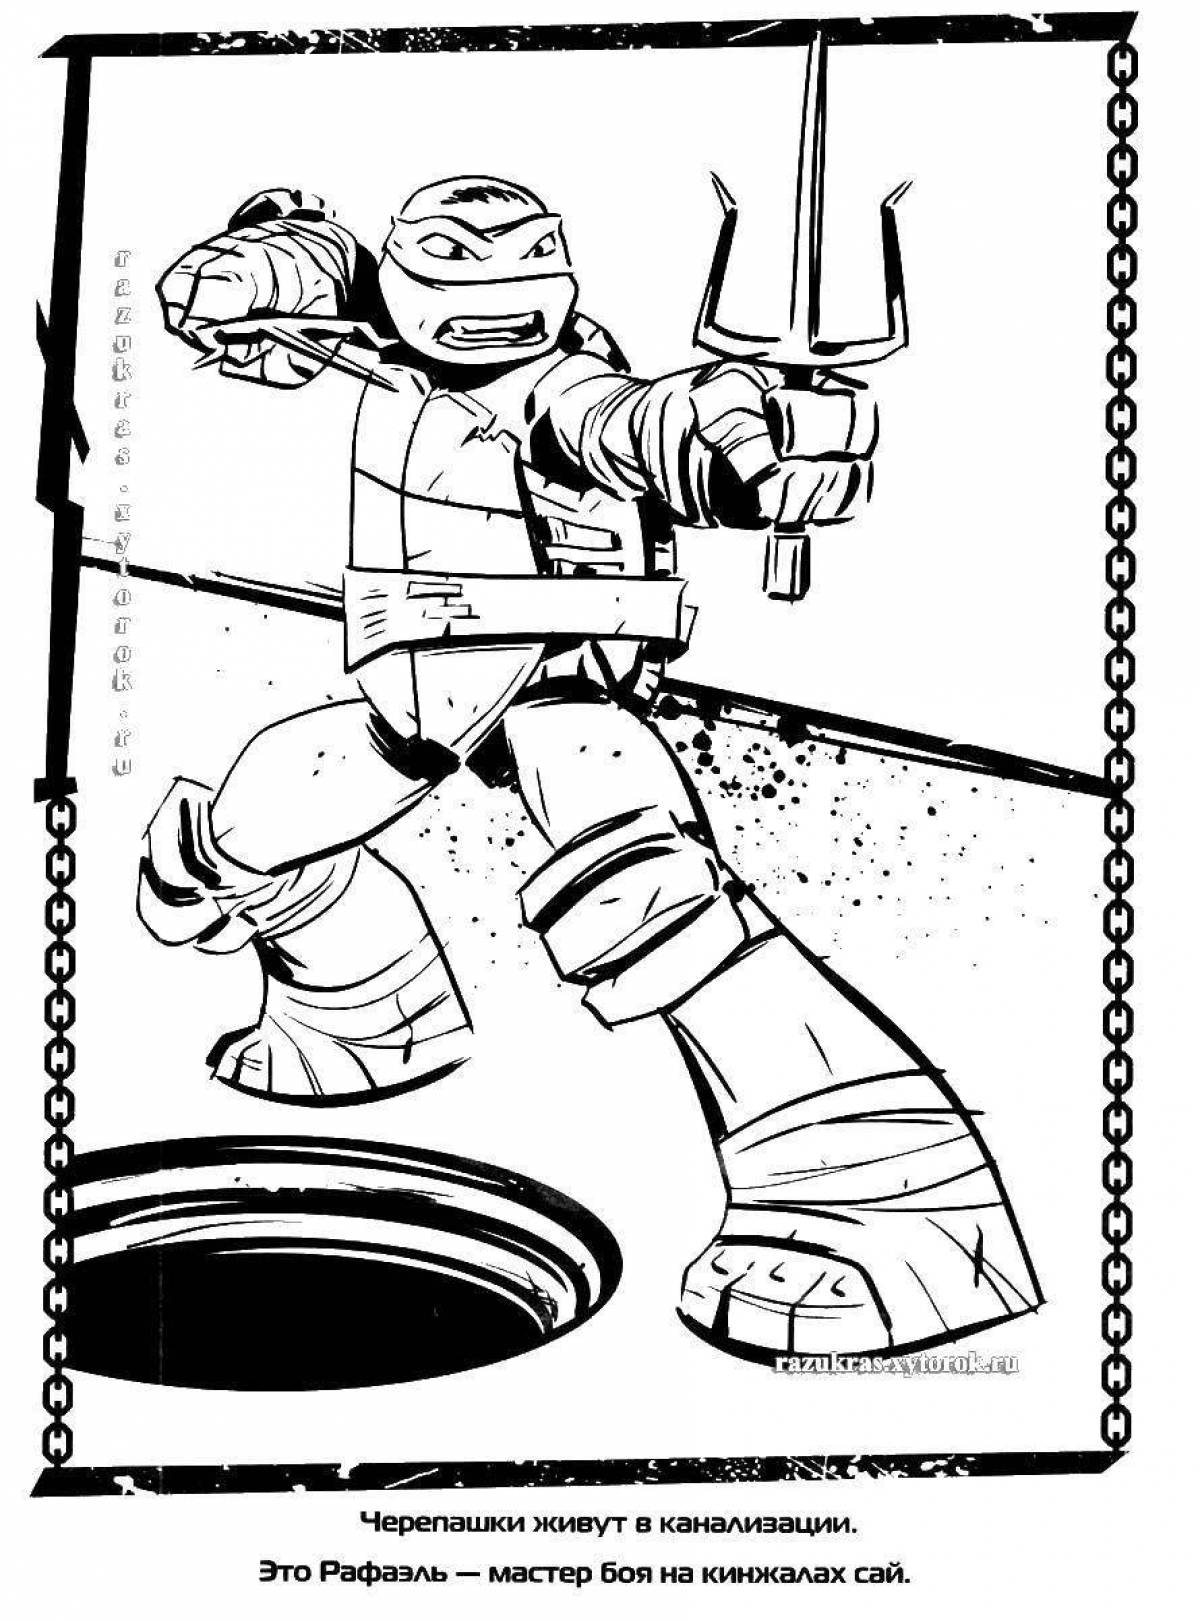 Energetic Teenage Mutant Ninja Turtles 2012 coloring book